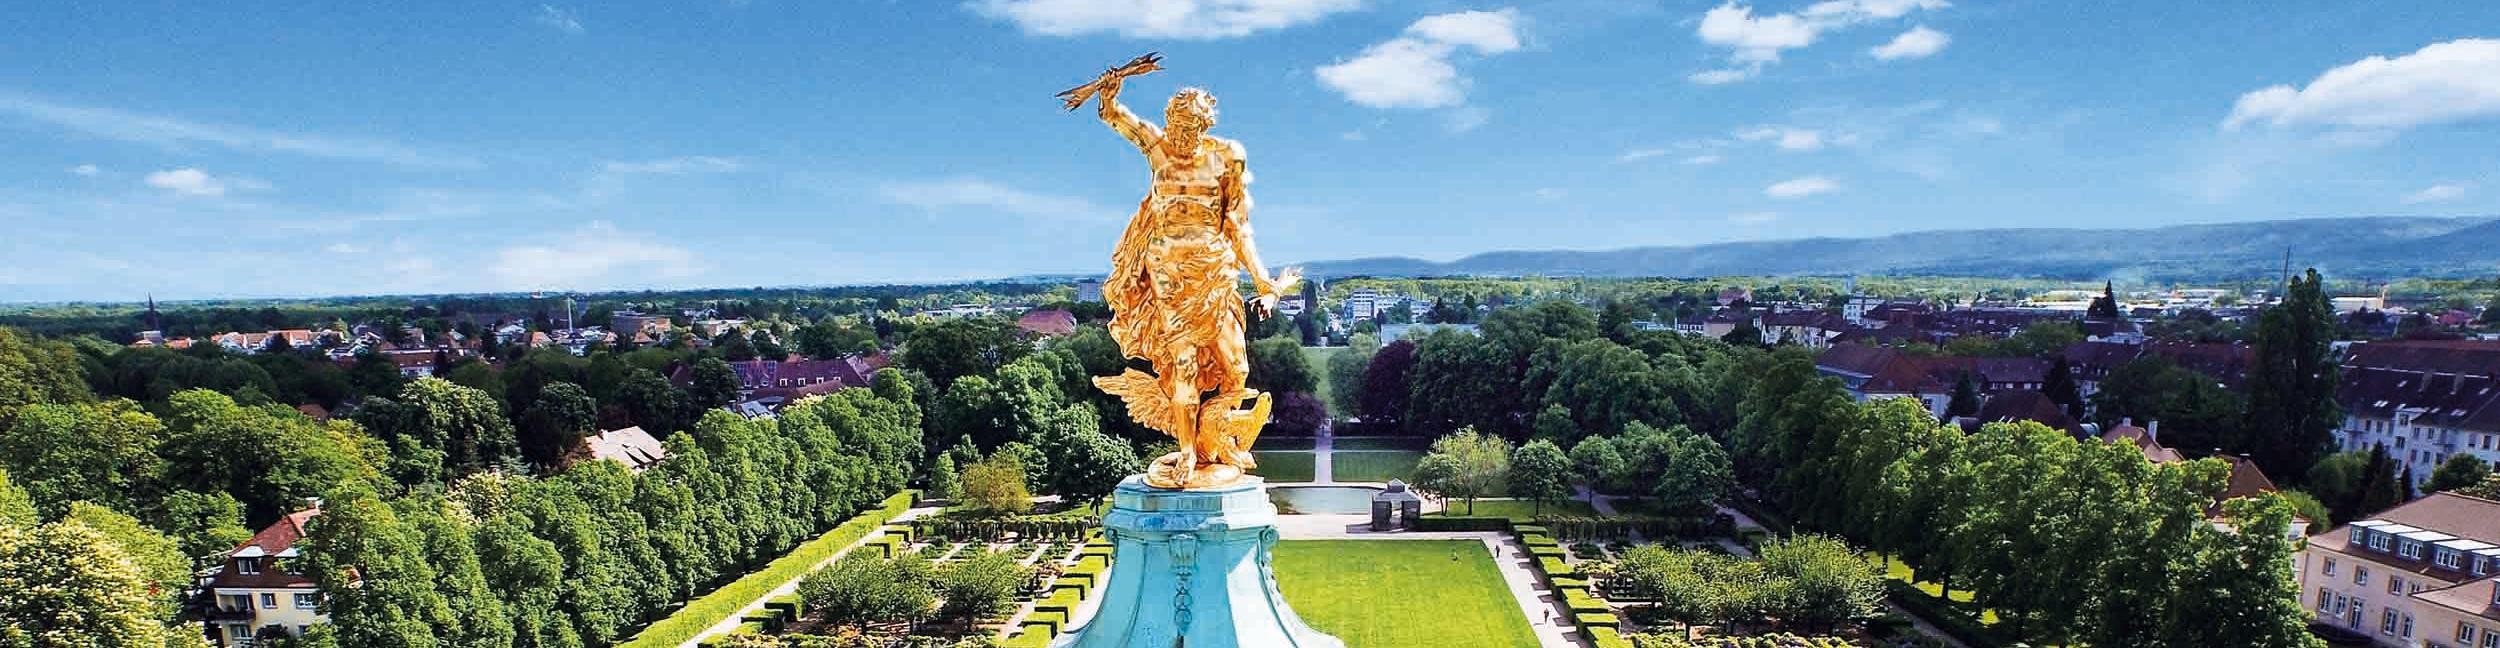 Goldener Mann auf dem Schloss Rastatt